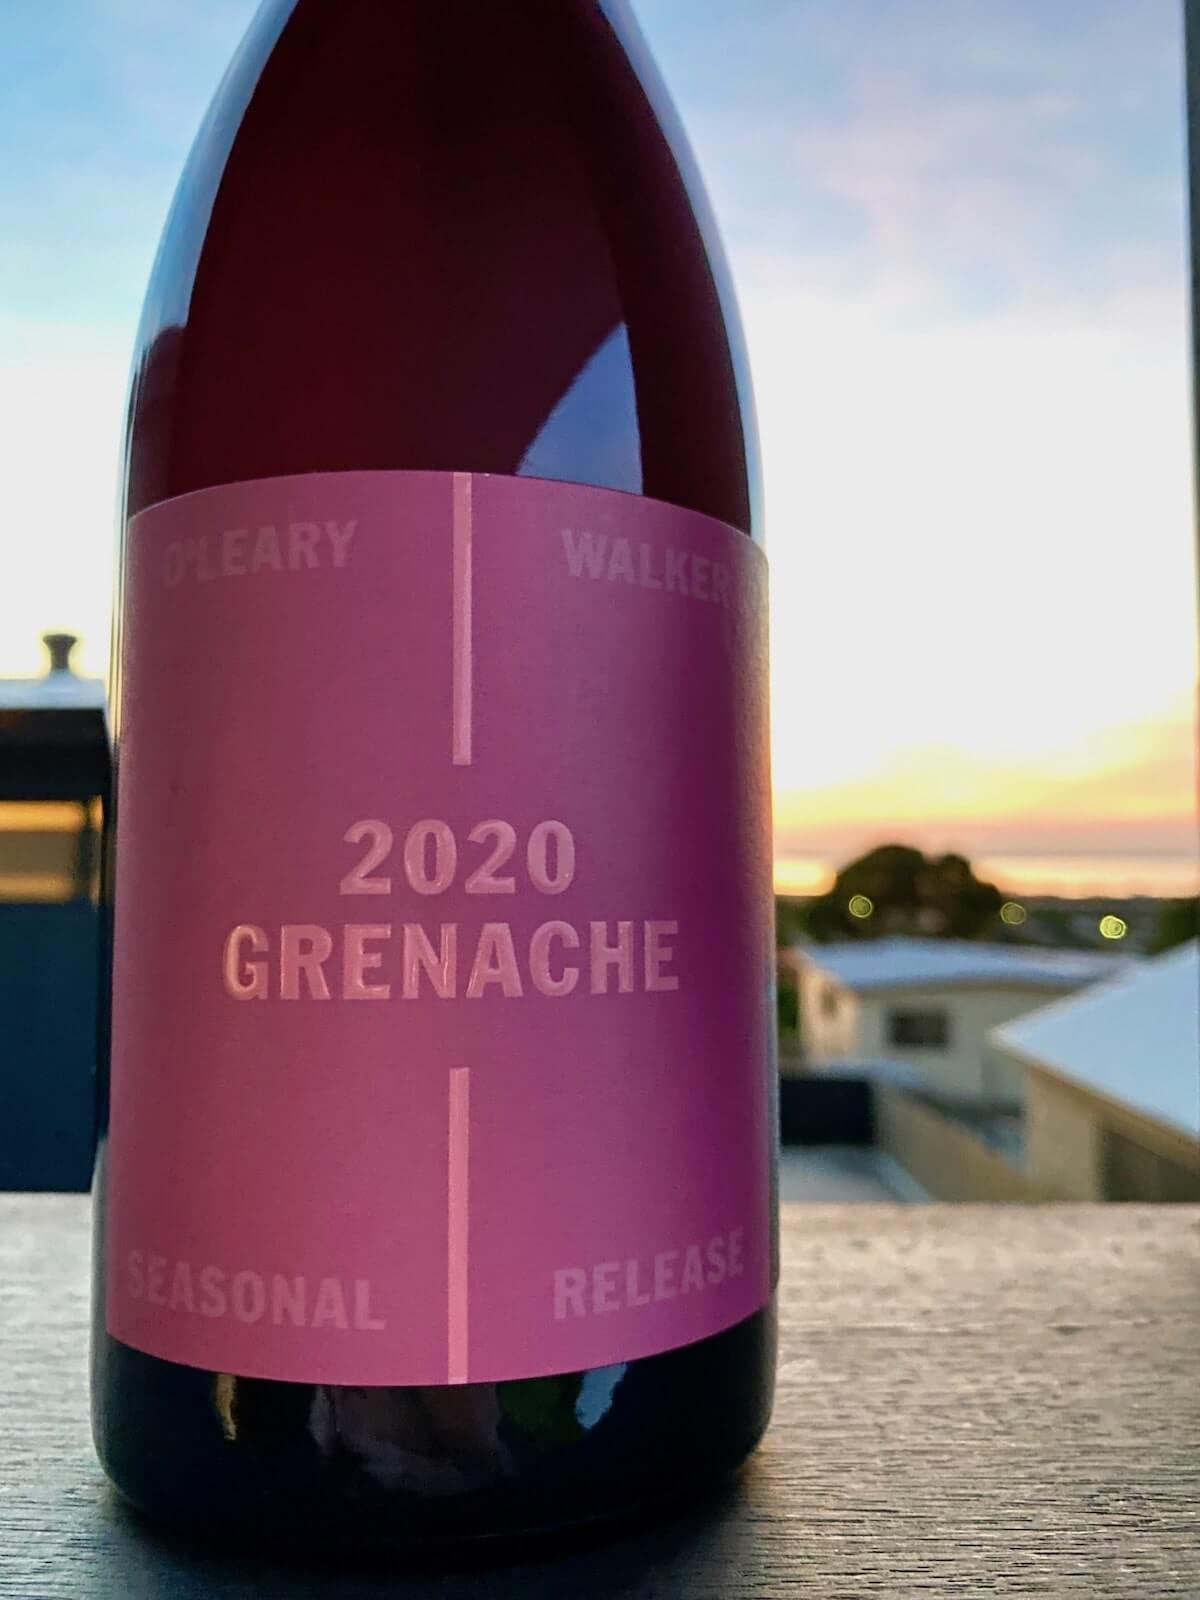 O’Leary Walker 2020 Grenache – Seasonal Release